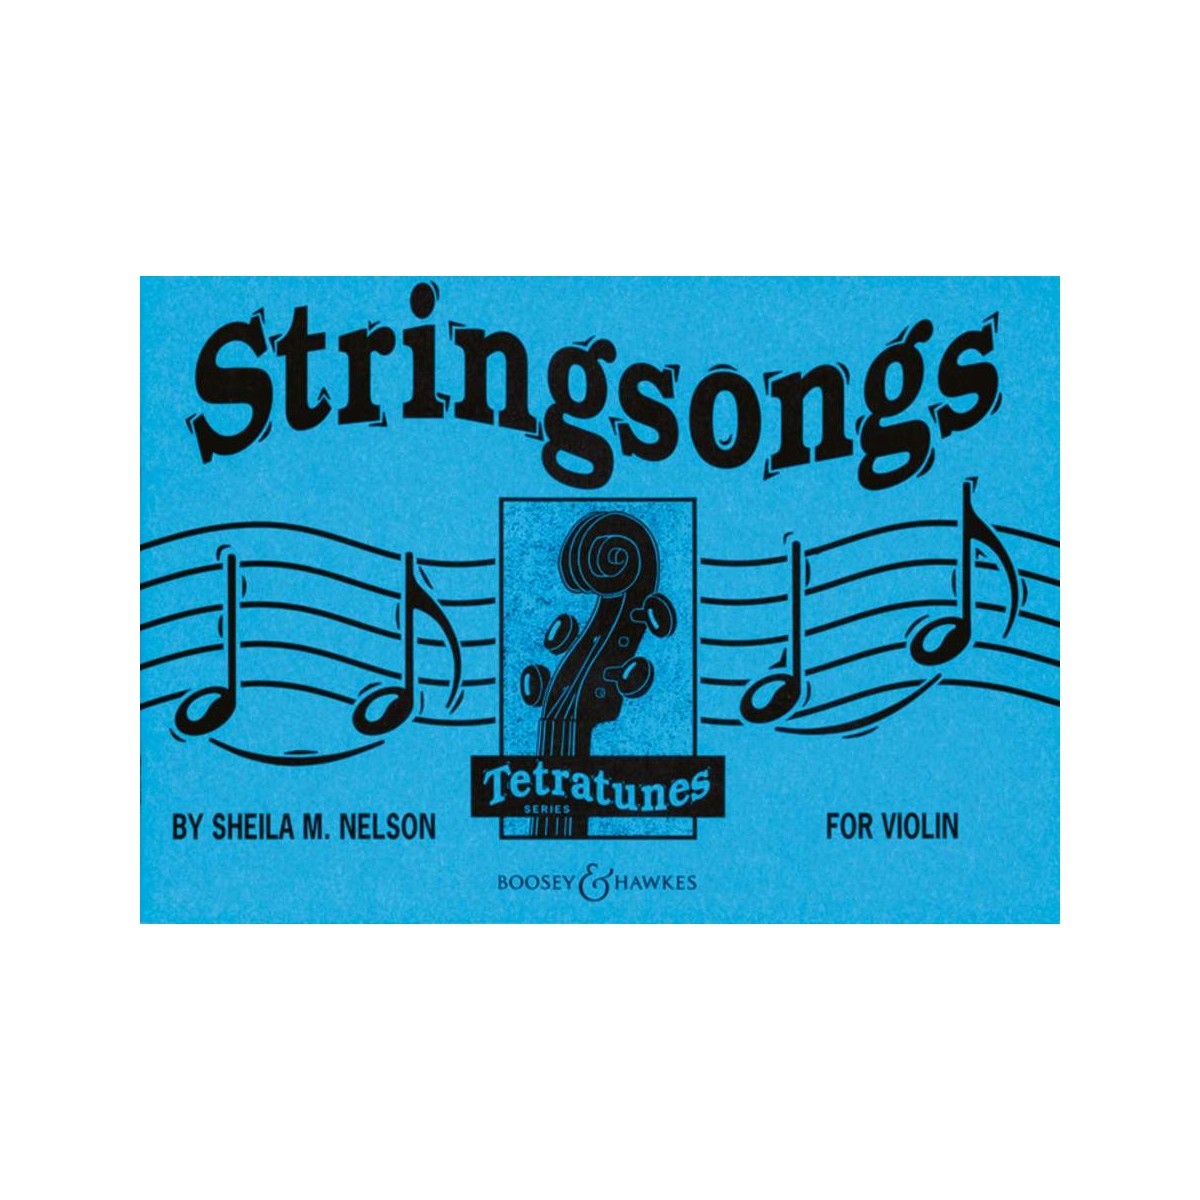 Stringsongs